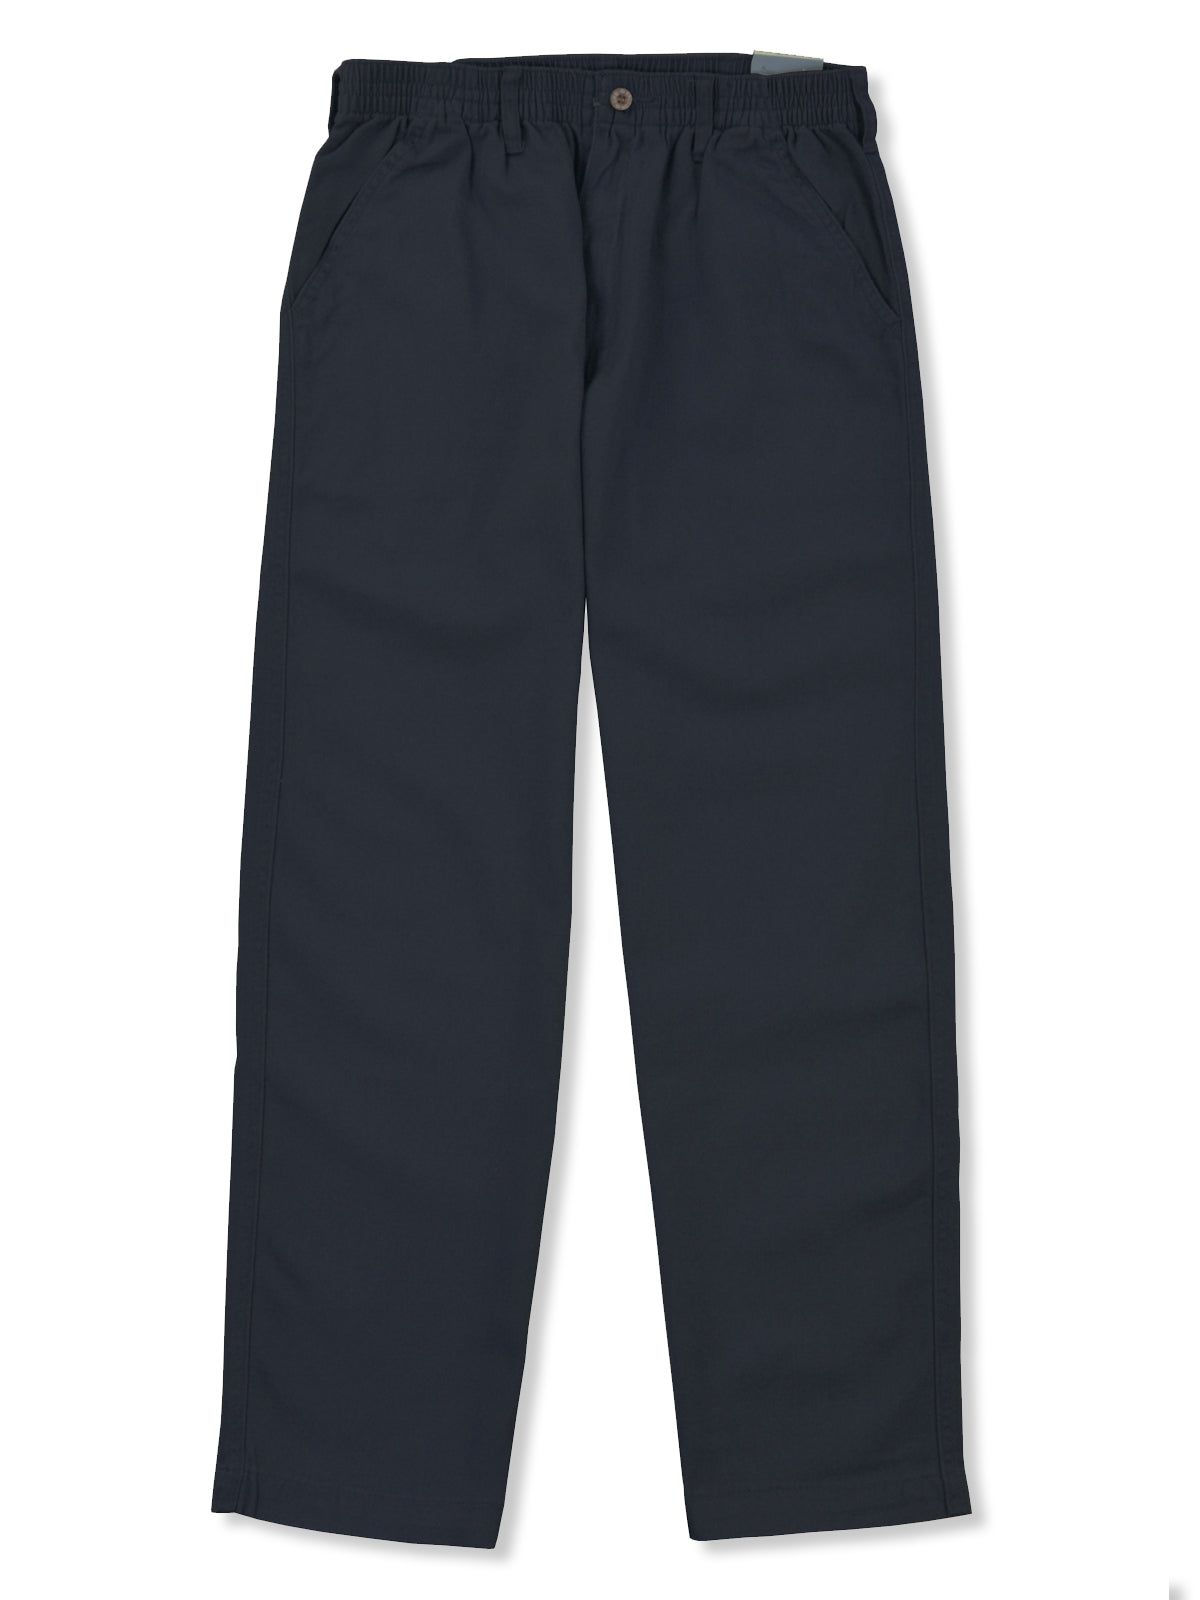 Full Elastic Waist Pants - Regular Sizes-3